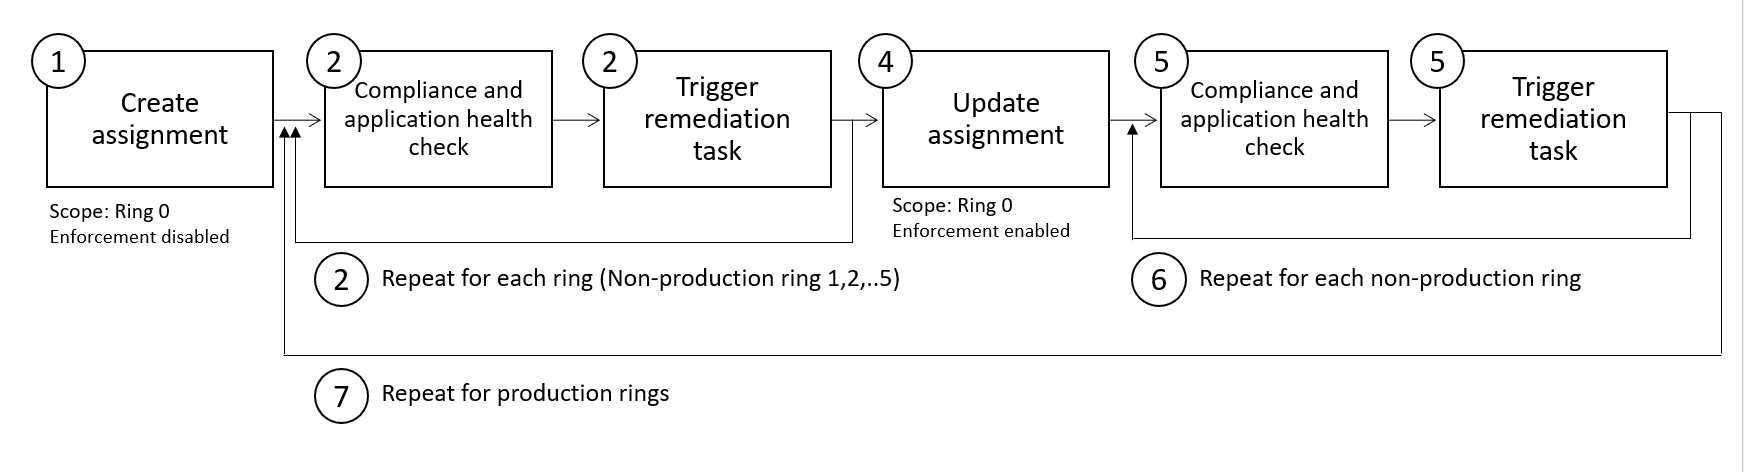 Fluxograma mostrando as etapas 5 a 9 no fluxo de trabalho de práticas de implantação segura da Política do Azure.